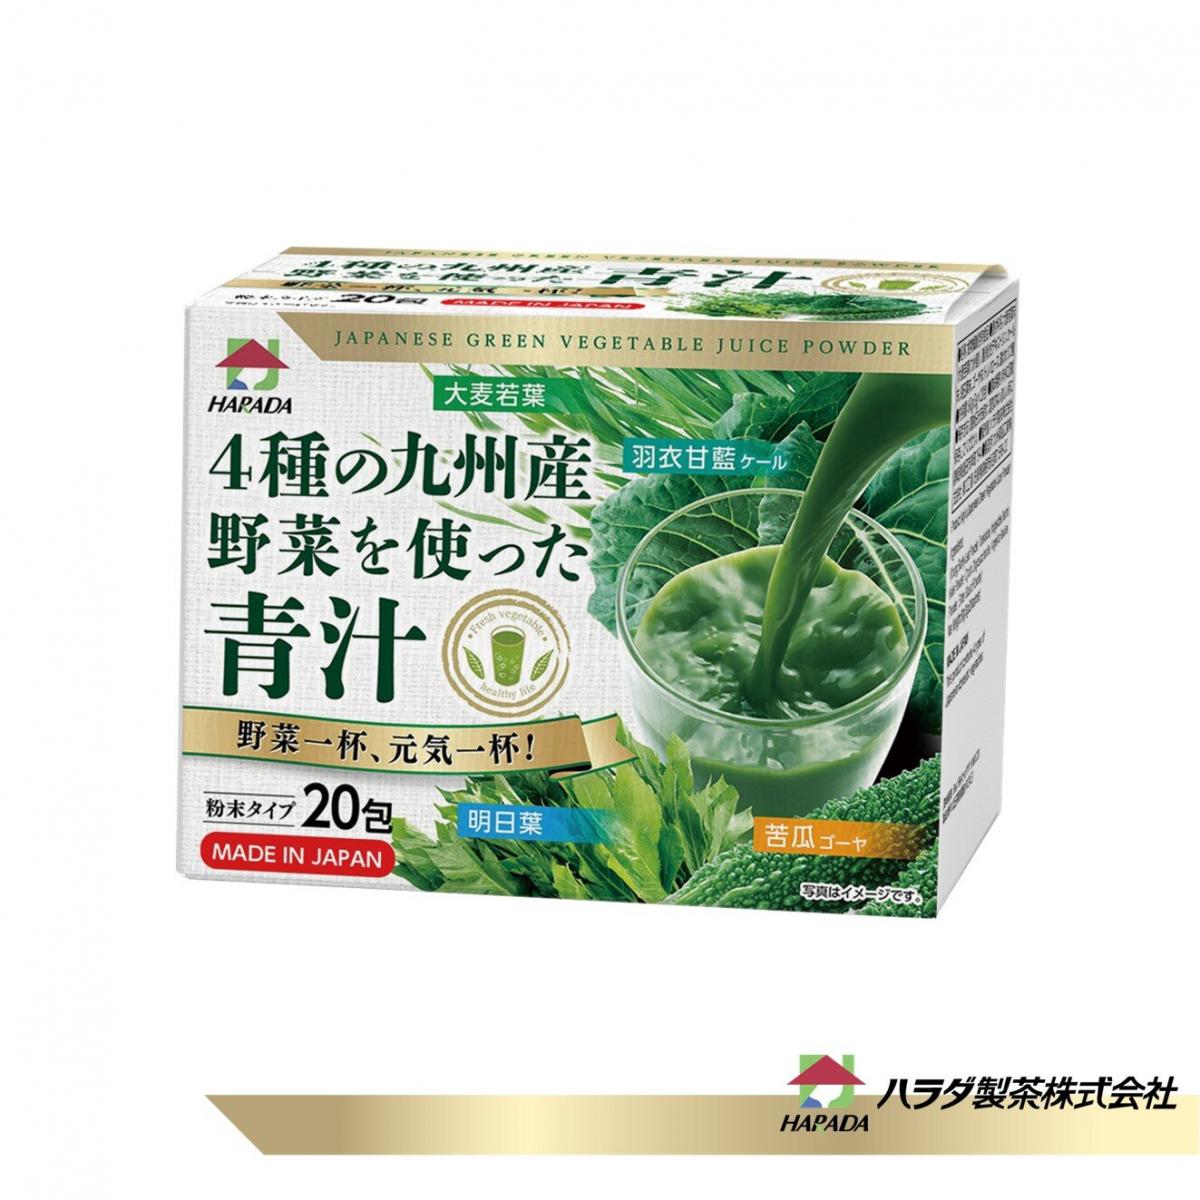 (新包裝) 日本九州野菜青汁  (大麥若葉 , 羽衣甘藍 , 明日葉, 苦瓜)